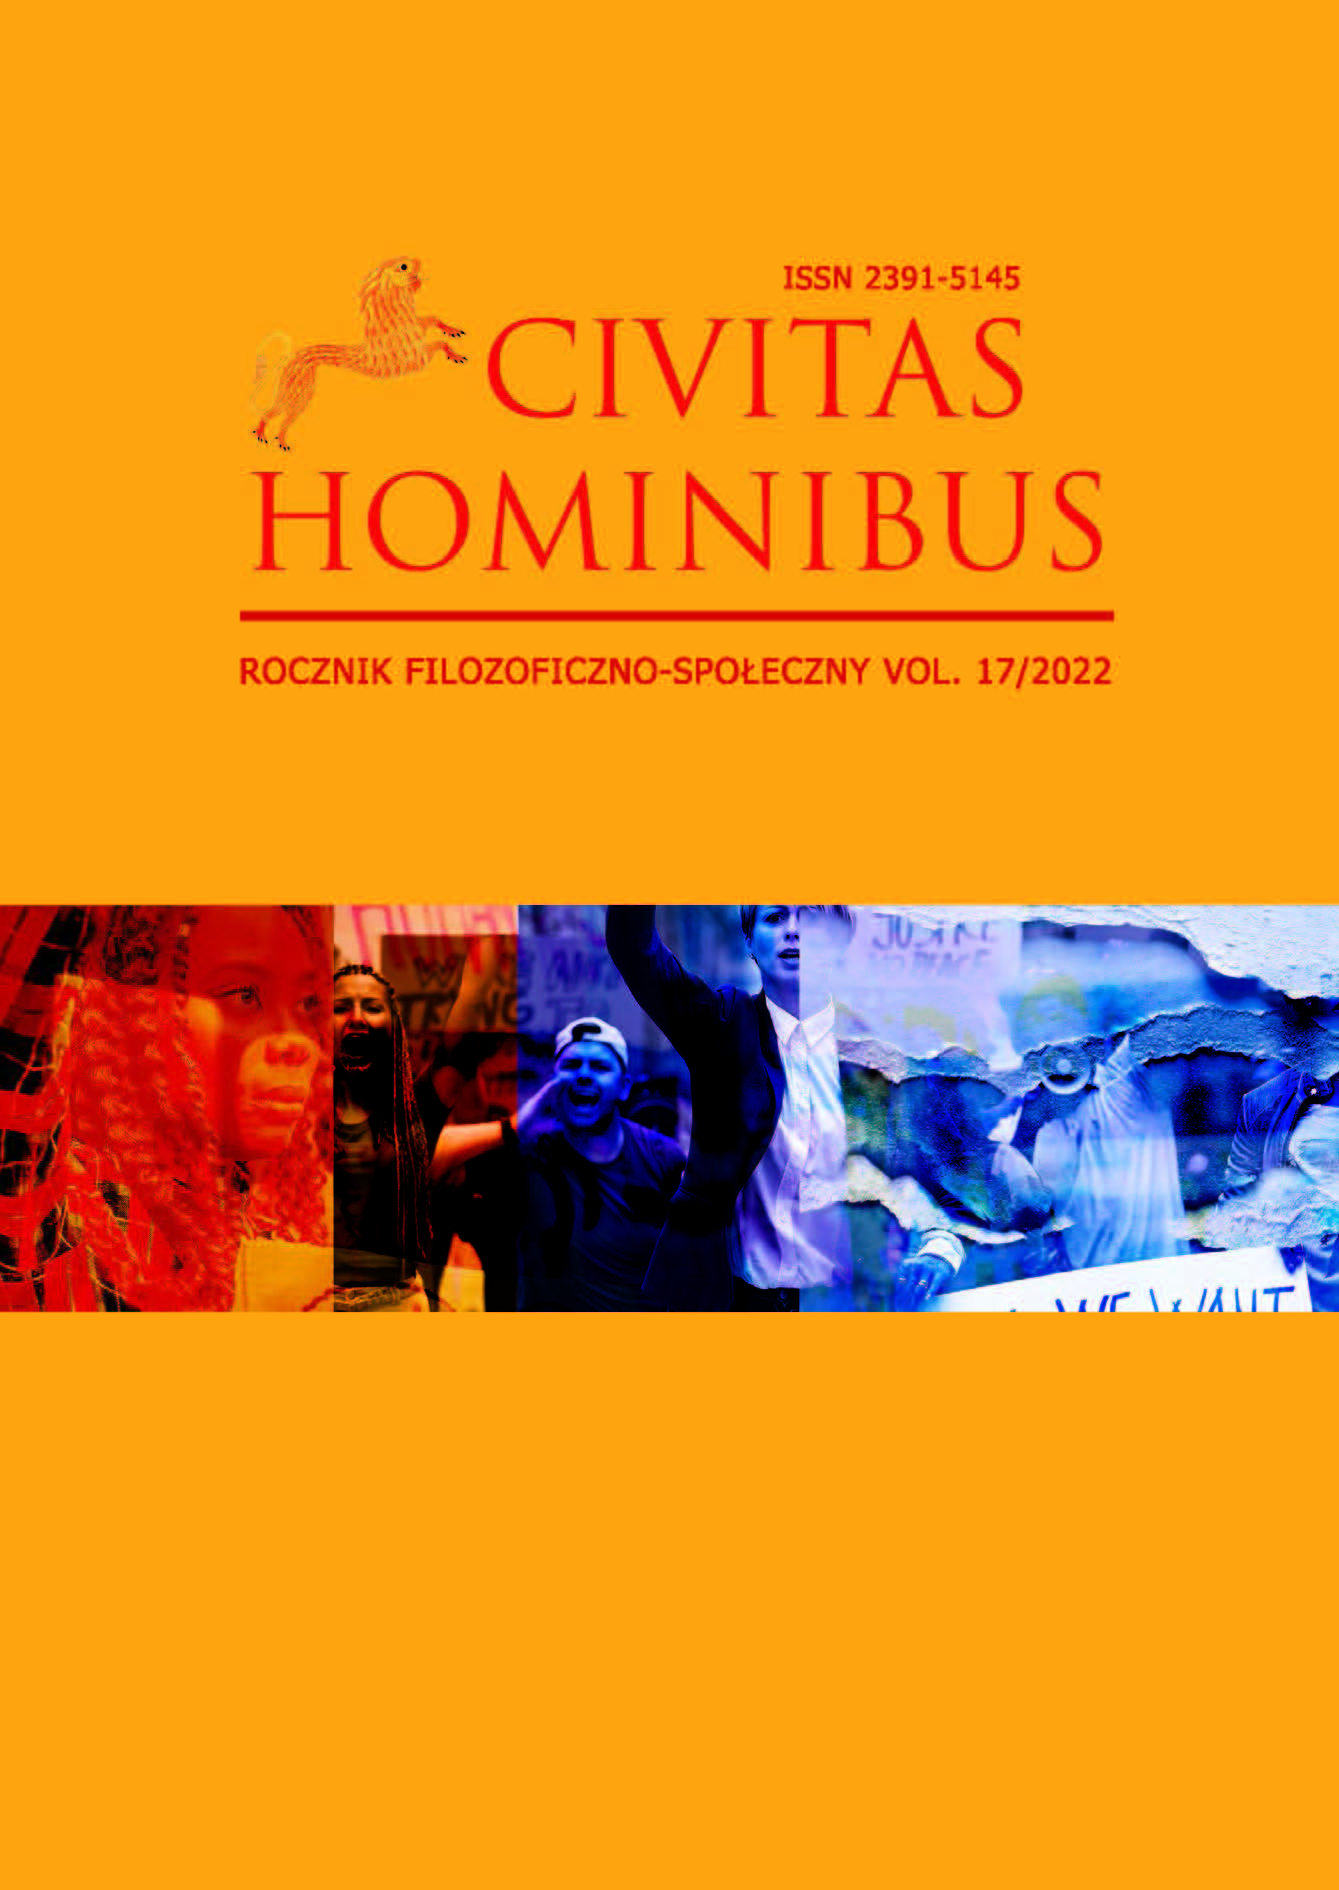 Civitas Hominibus XVII